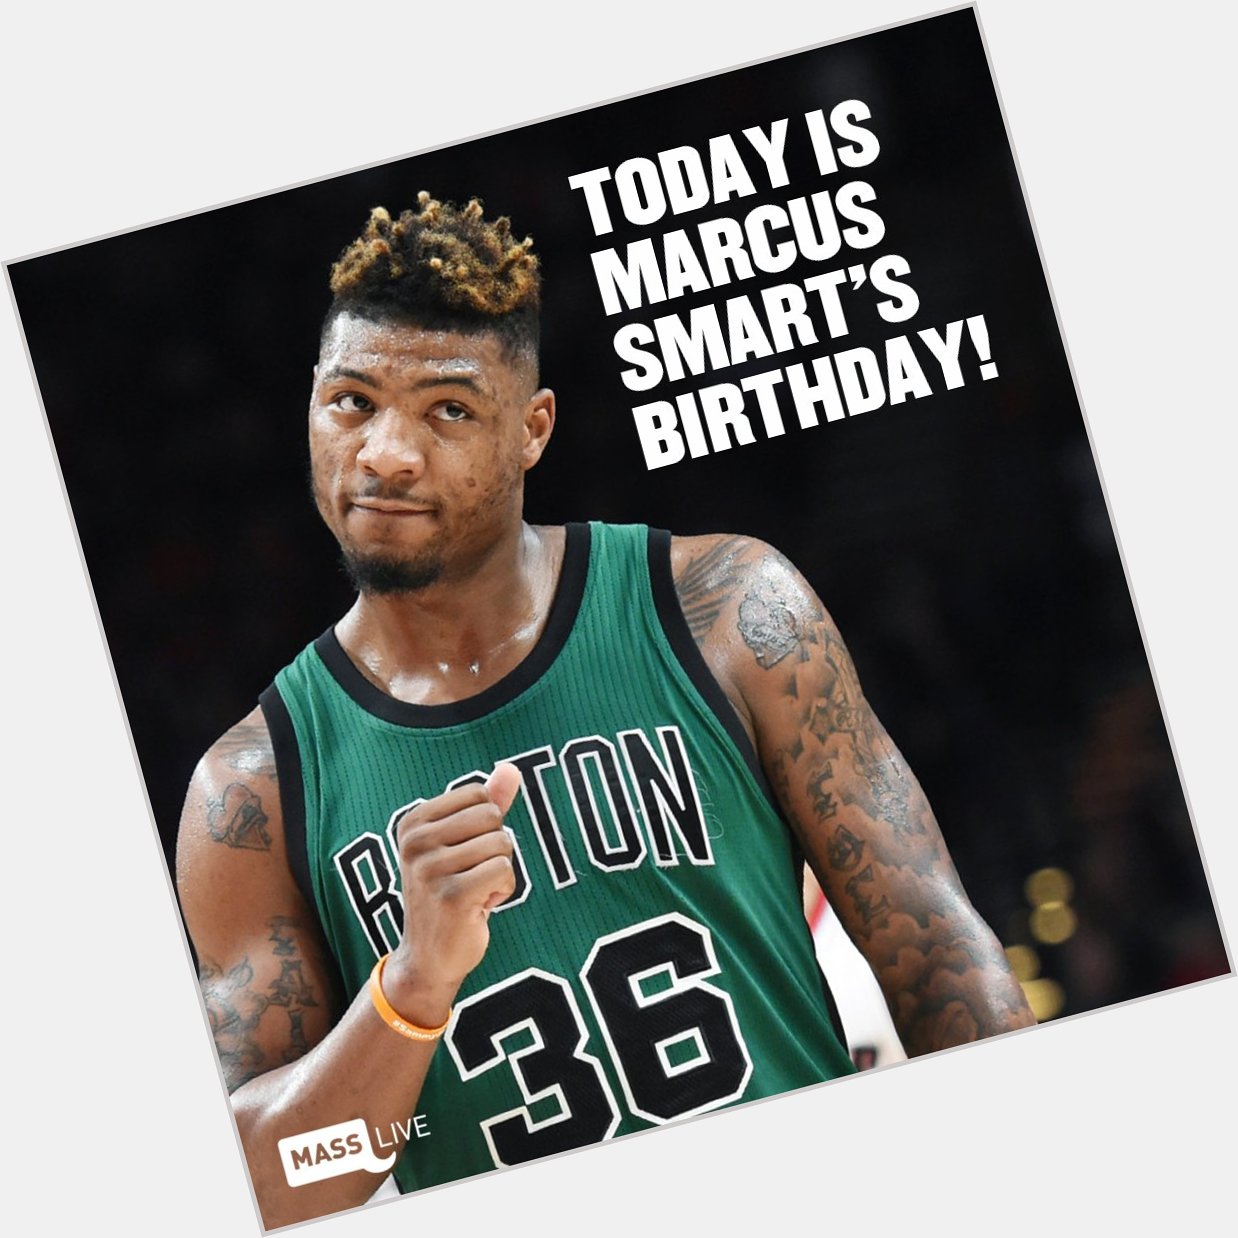 Happy birthday, Marcus Smart! 